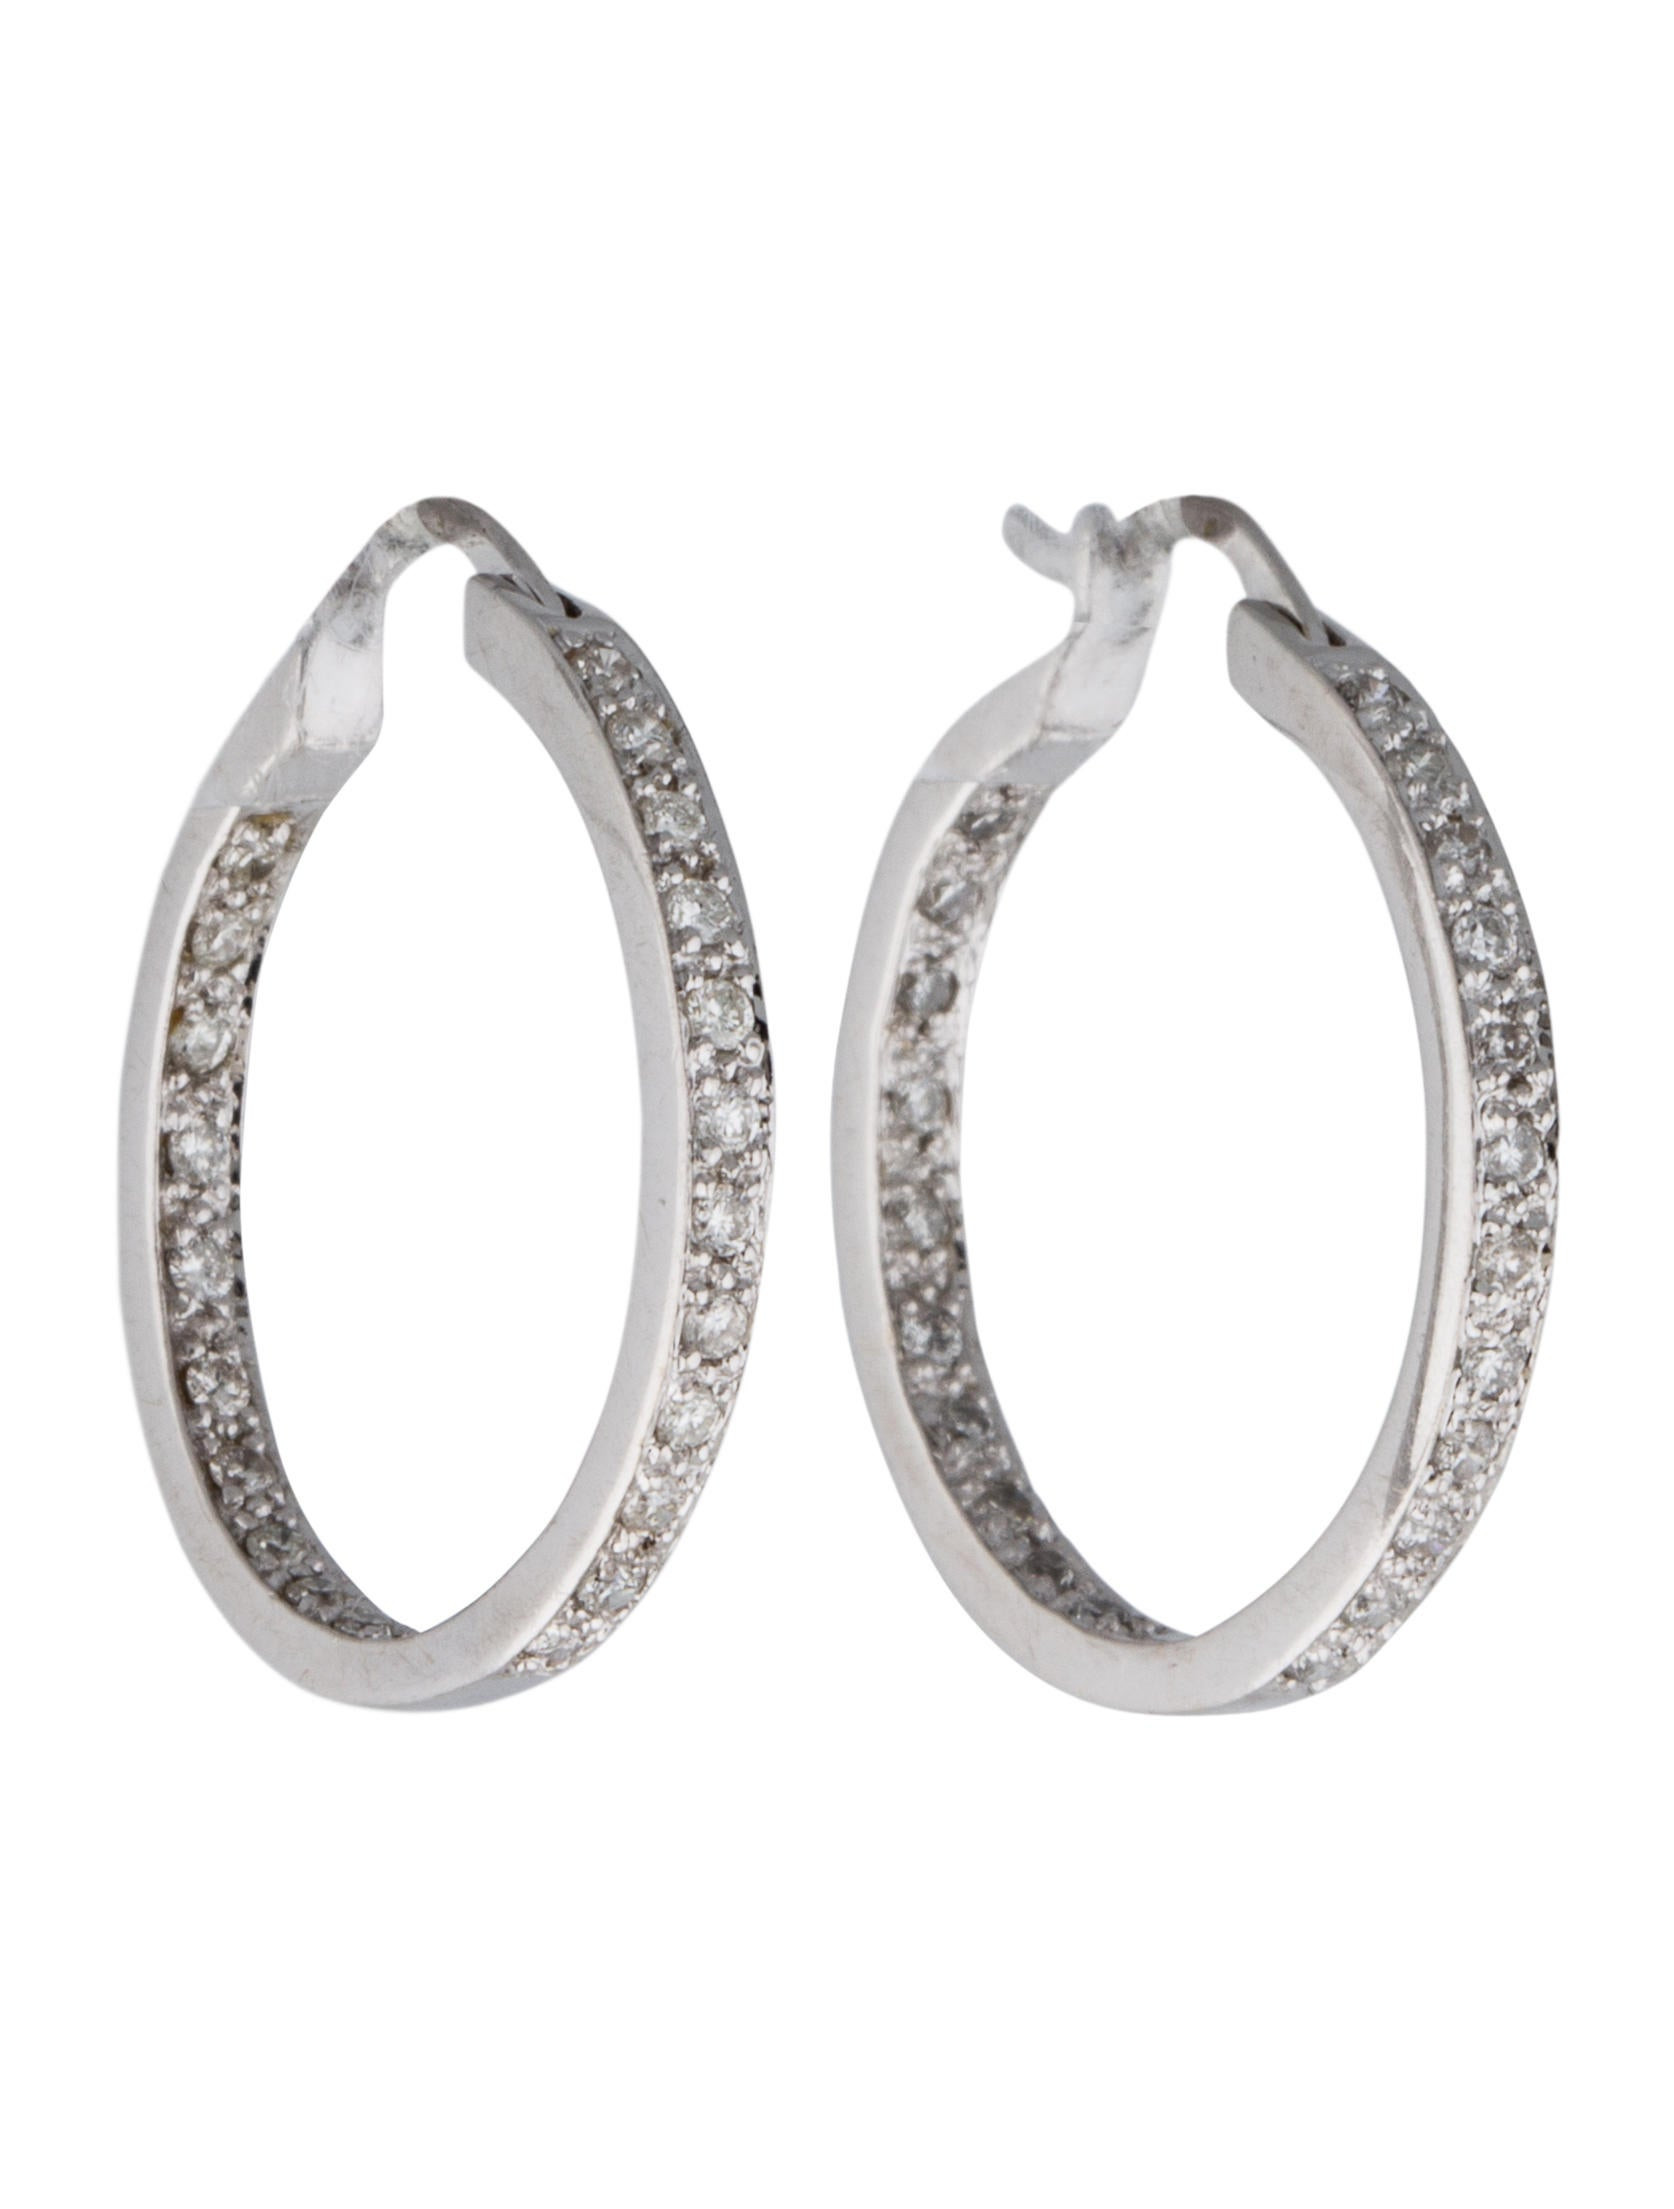 Inside Out Diamond Hoop Earrings
 14K Diamond Inside Out Hoop Earrings Jewelry FJE